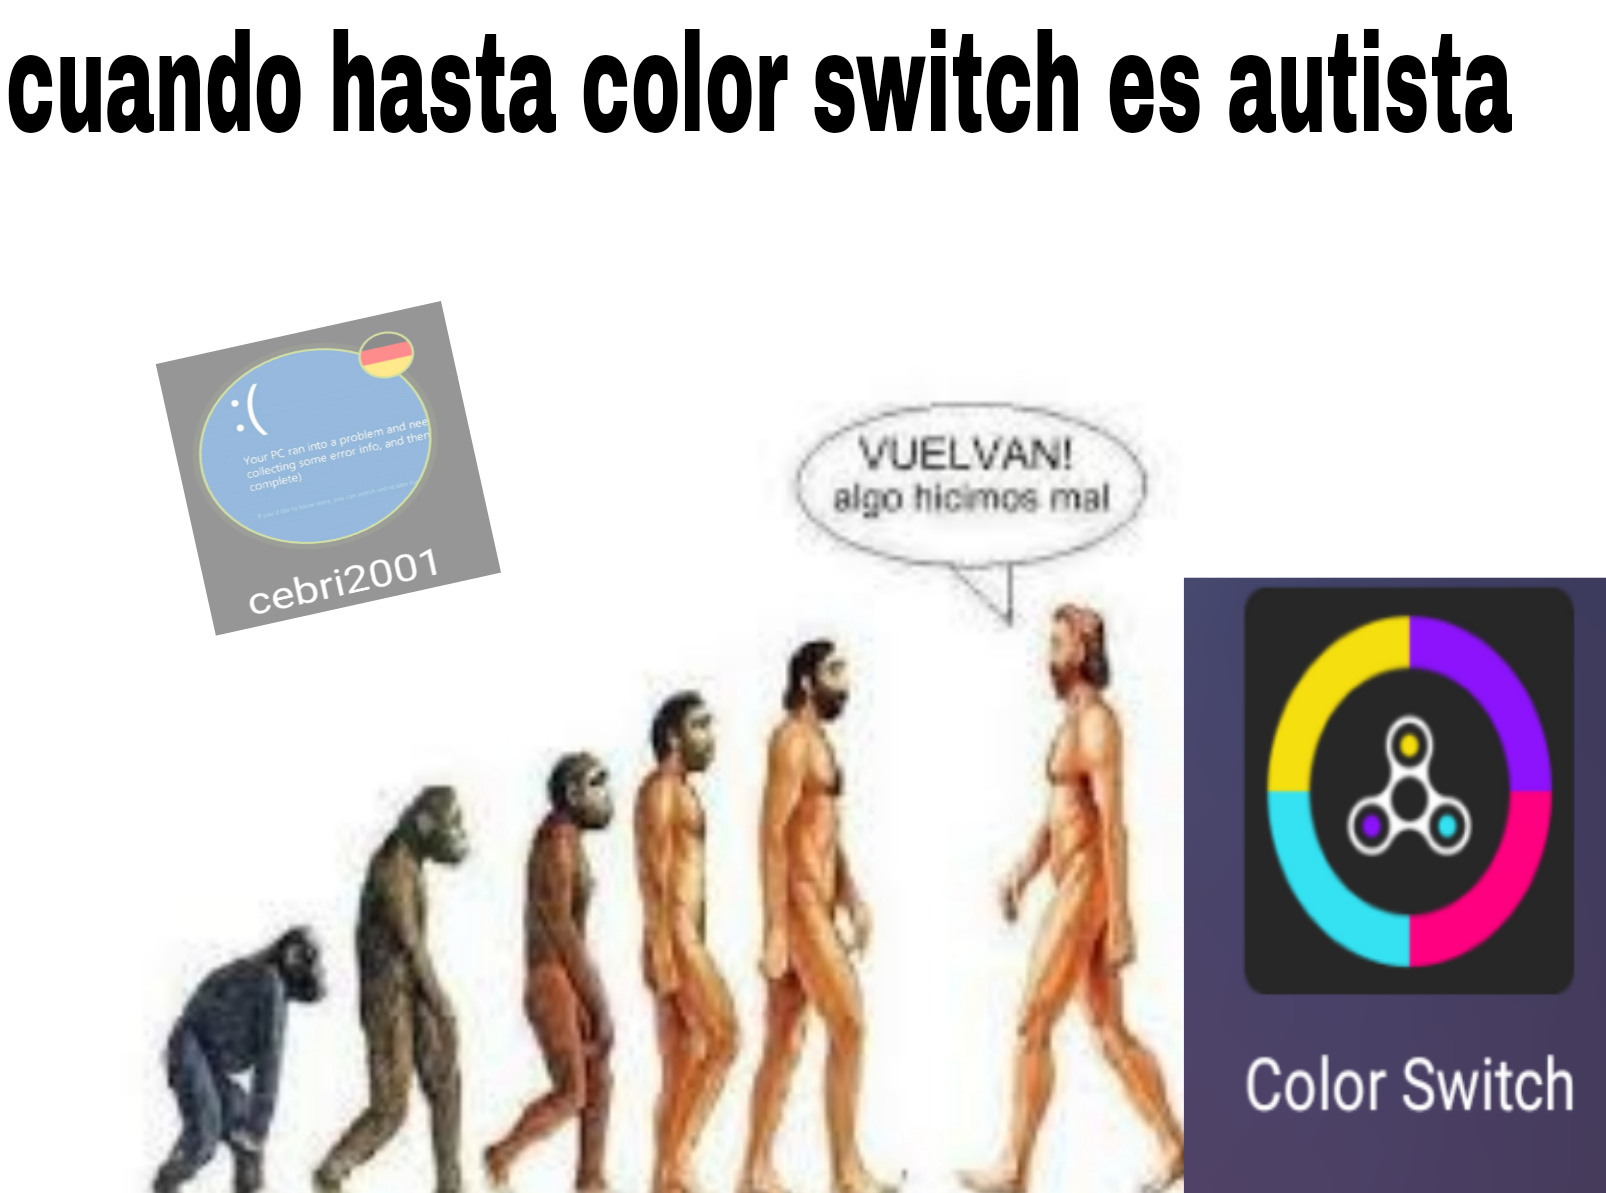 Por que color switch - meme